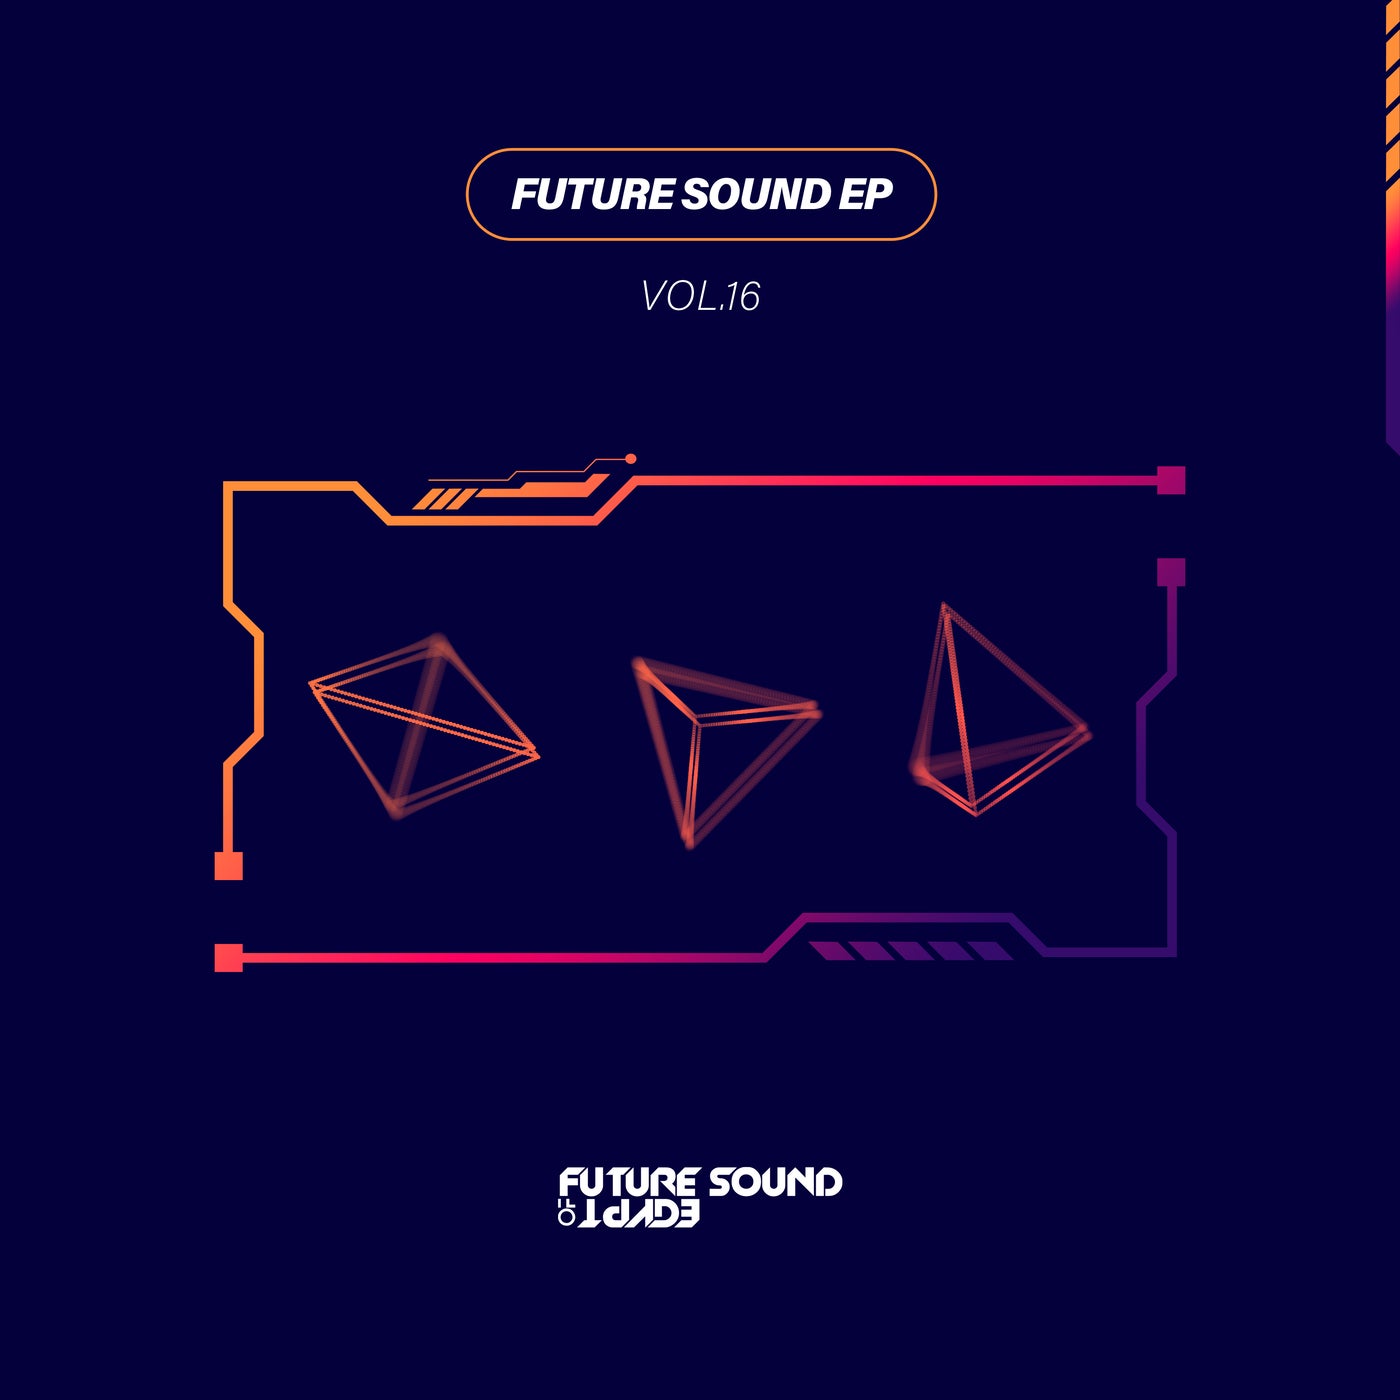 Future Sound EP Vol. 16